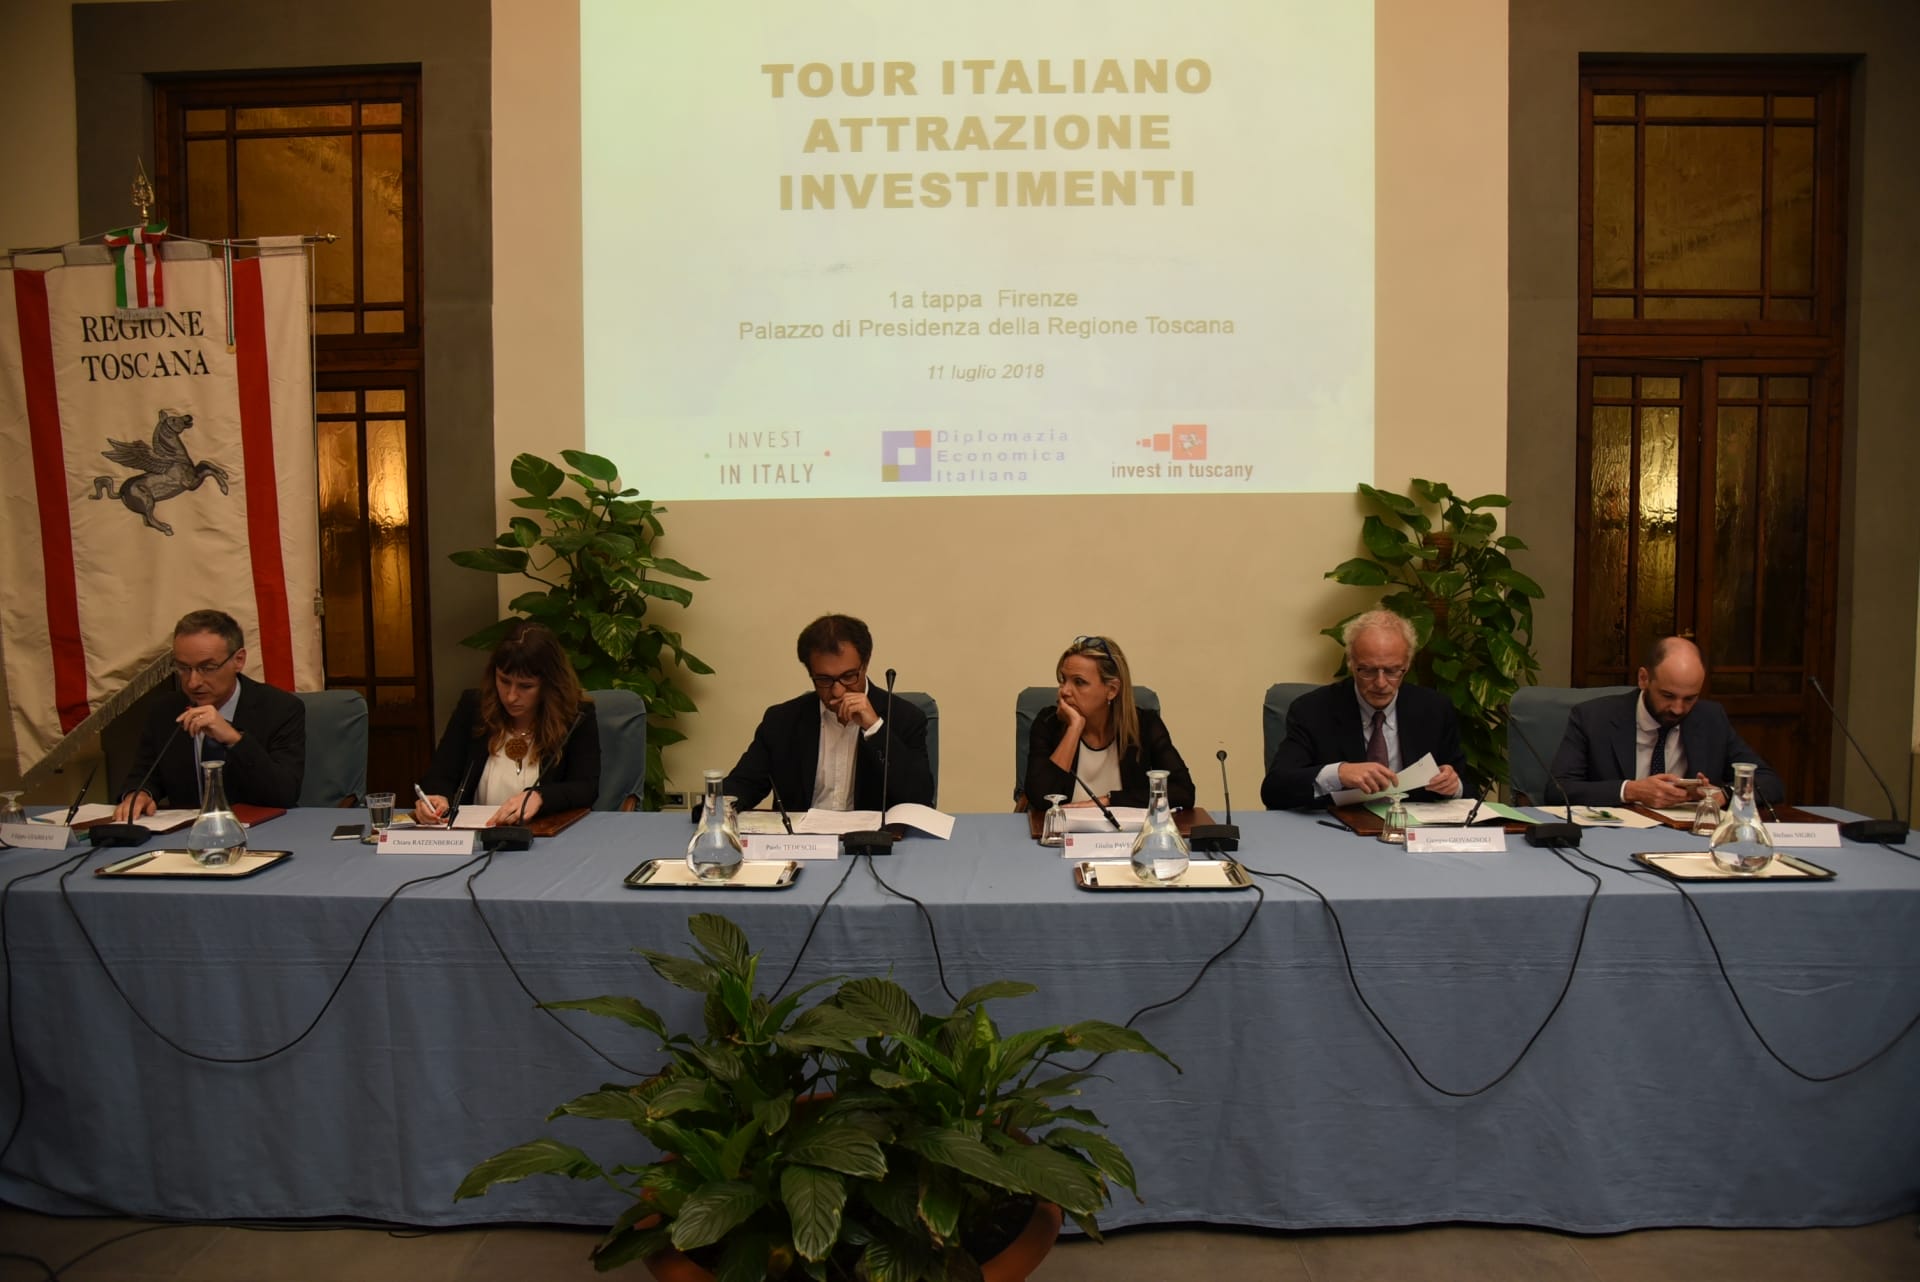 Attrazione Investimenti, oggi a Firenze la prima tappa